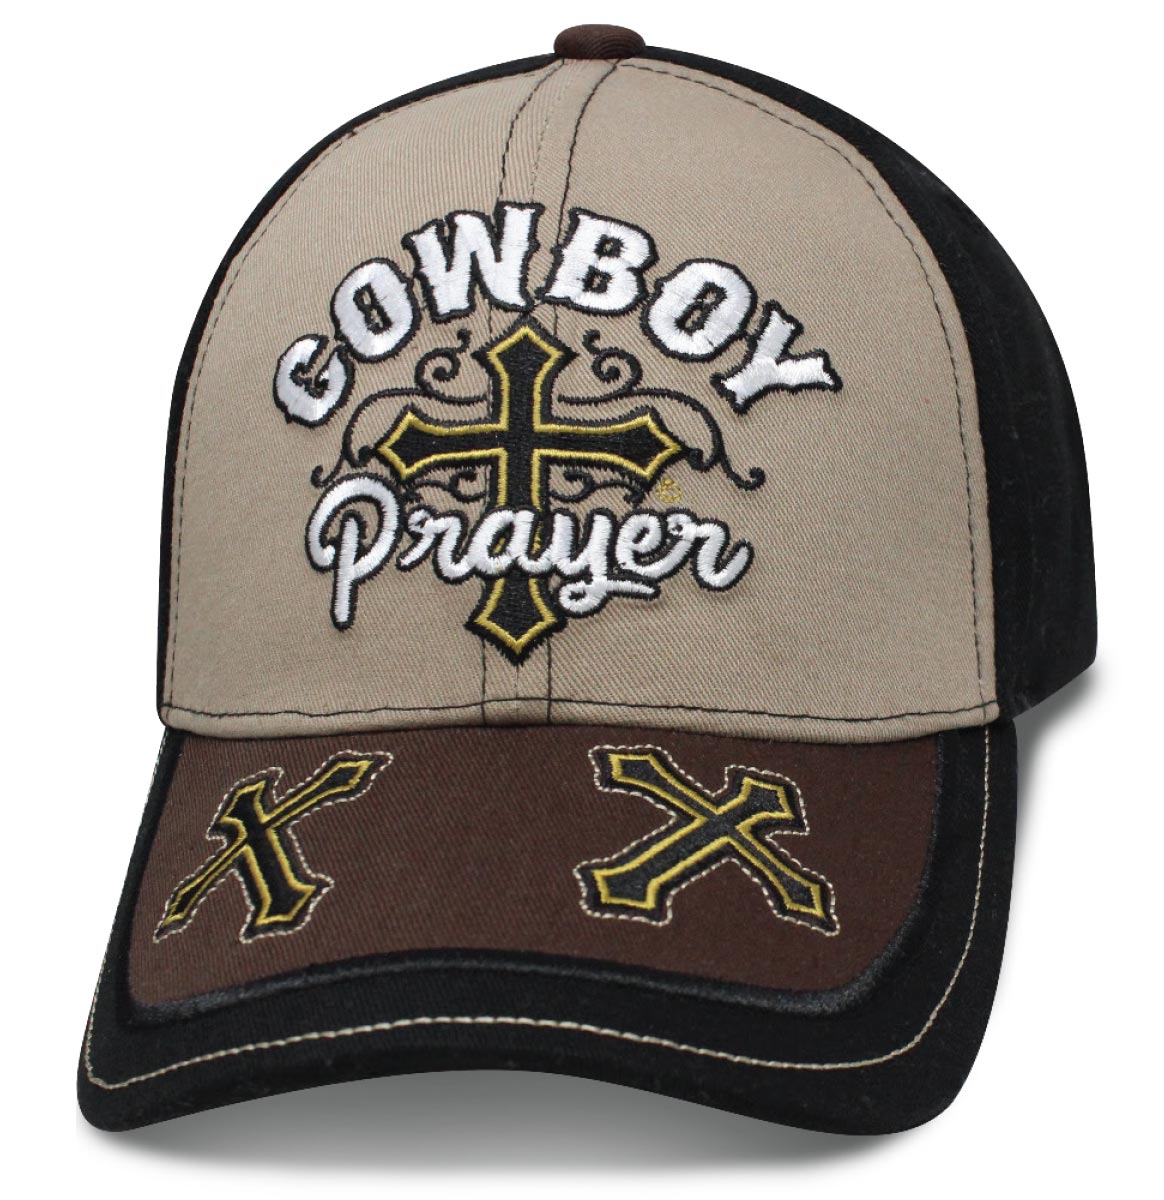 Cowboy Prayer Scrolls